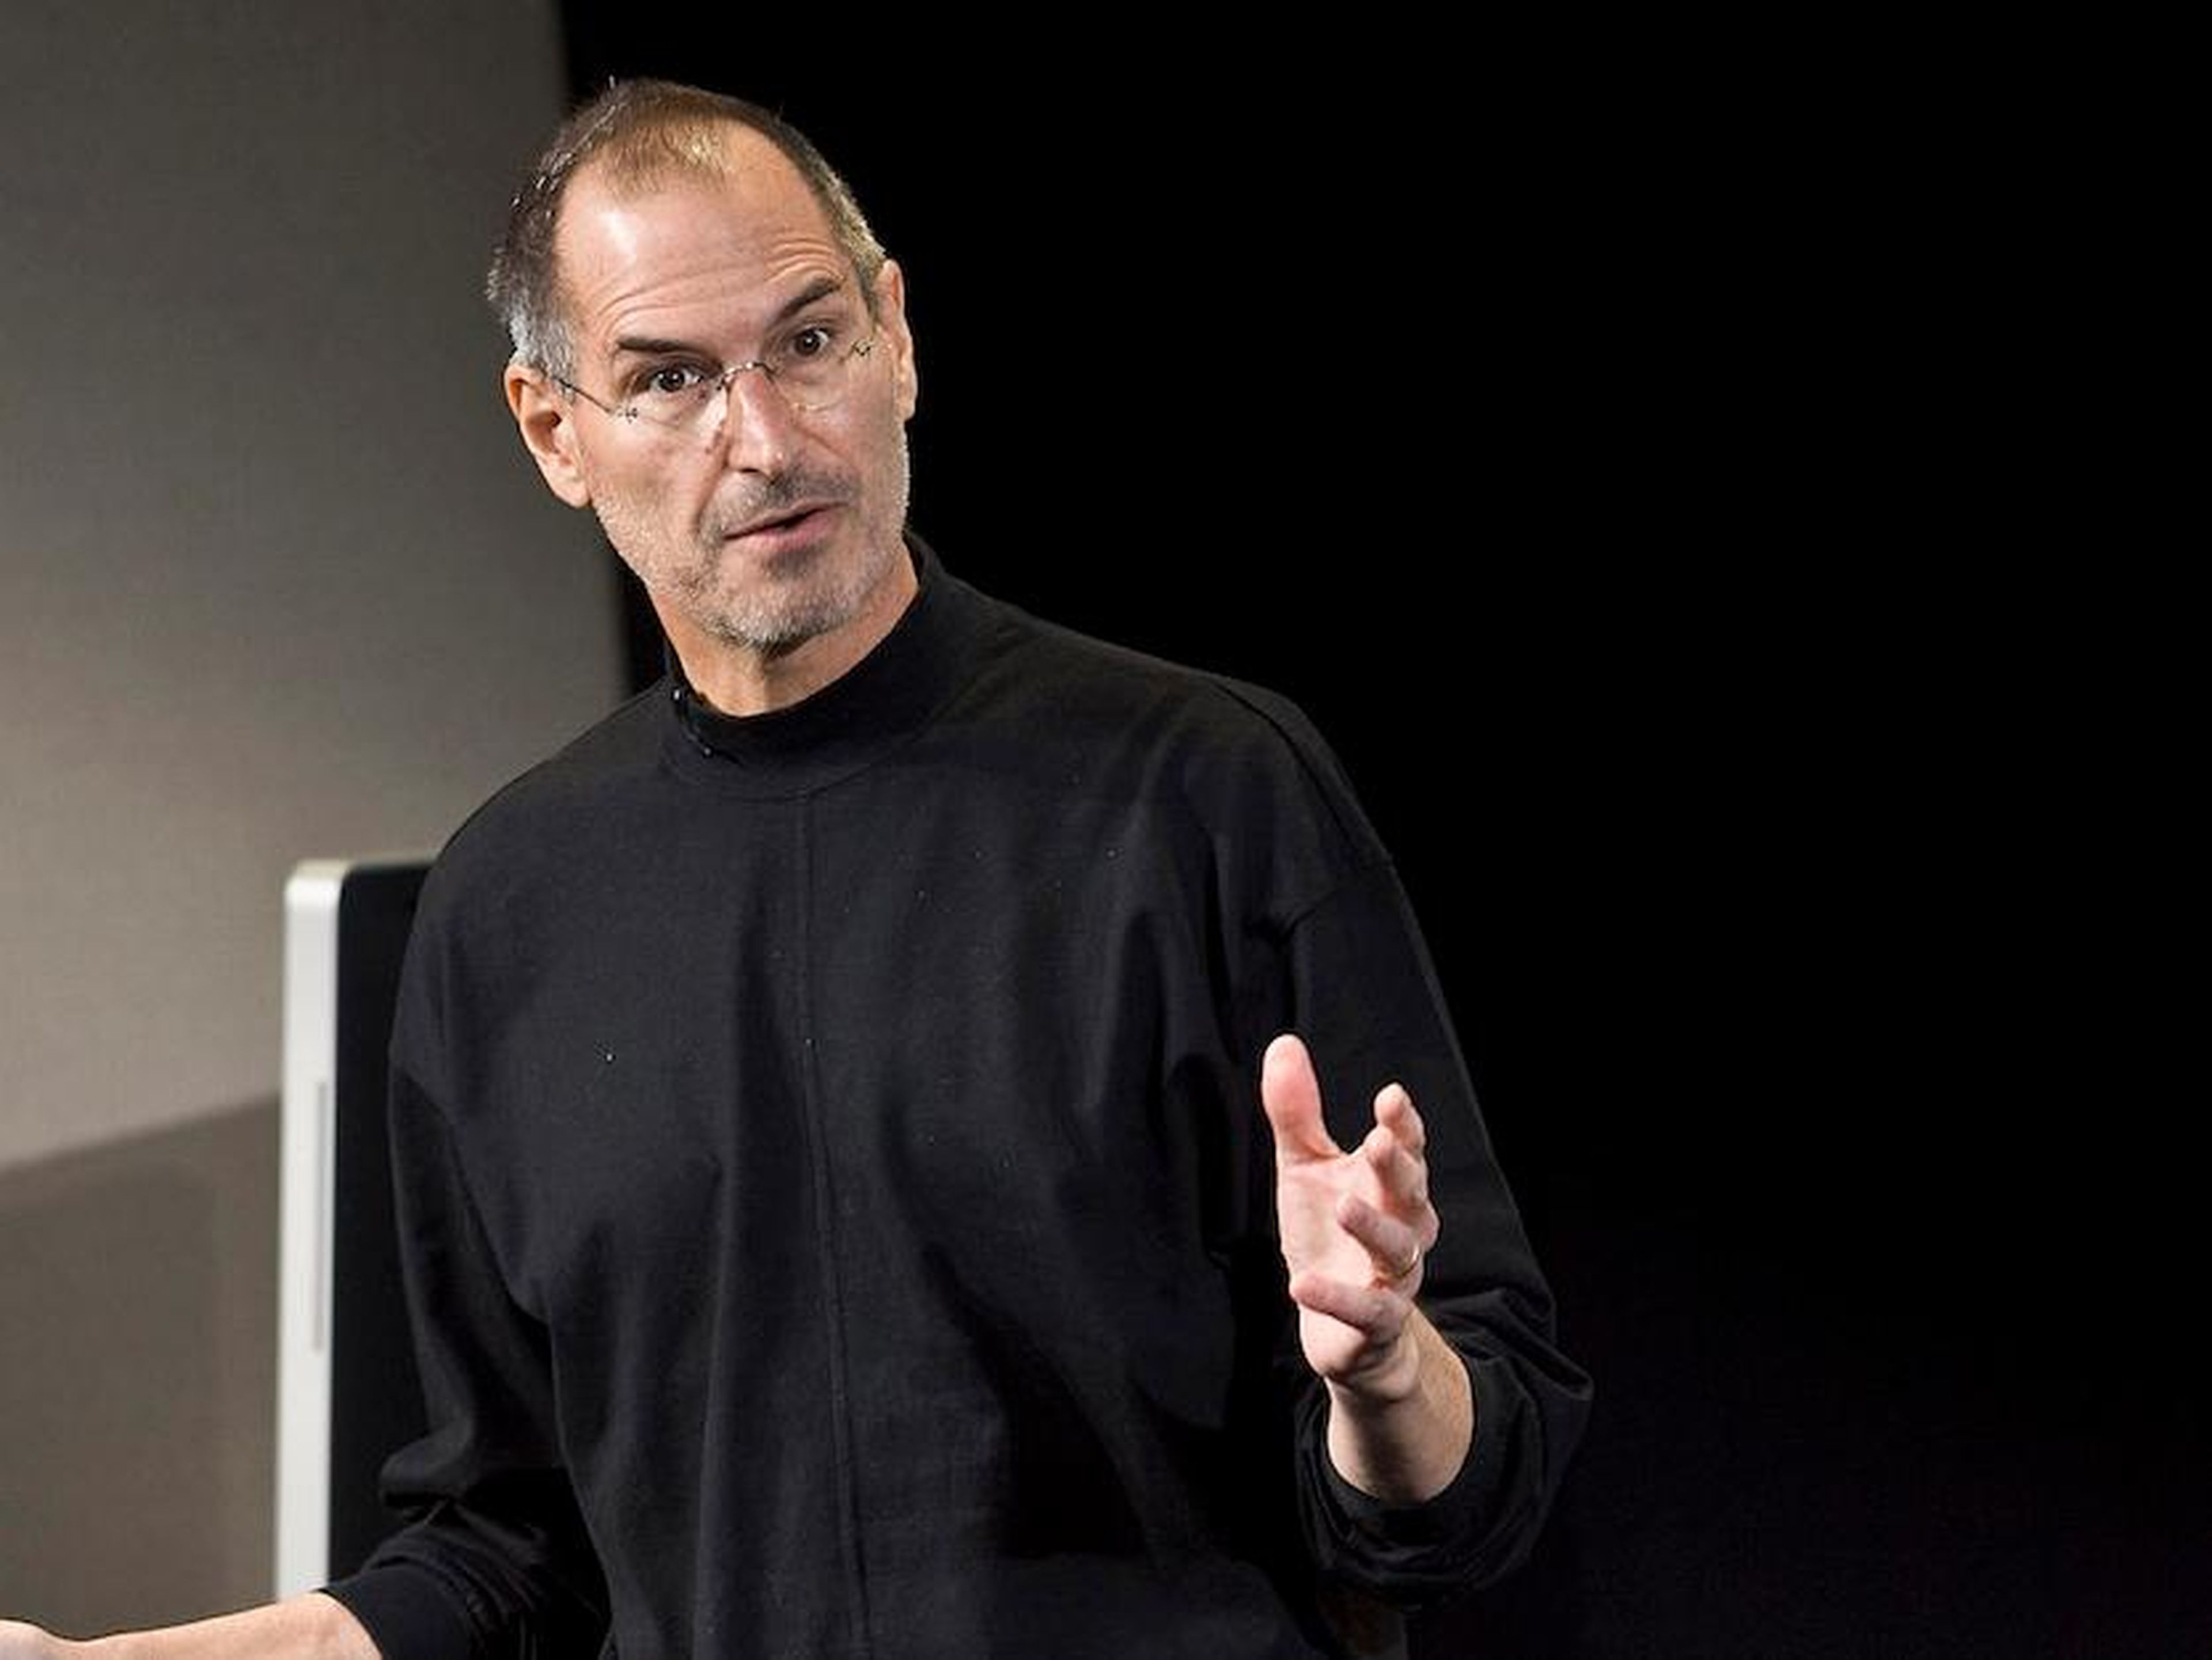 Steve Jobs, cofundador y ex CEO de Apple